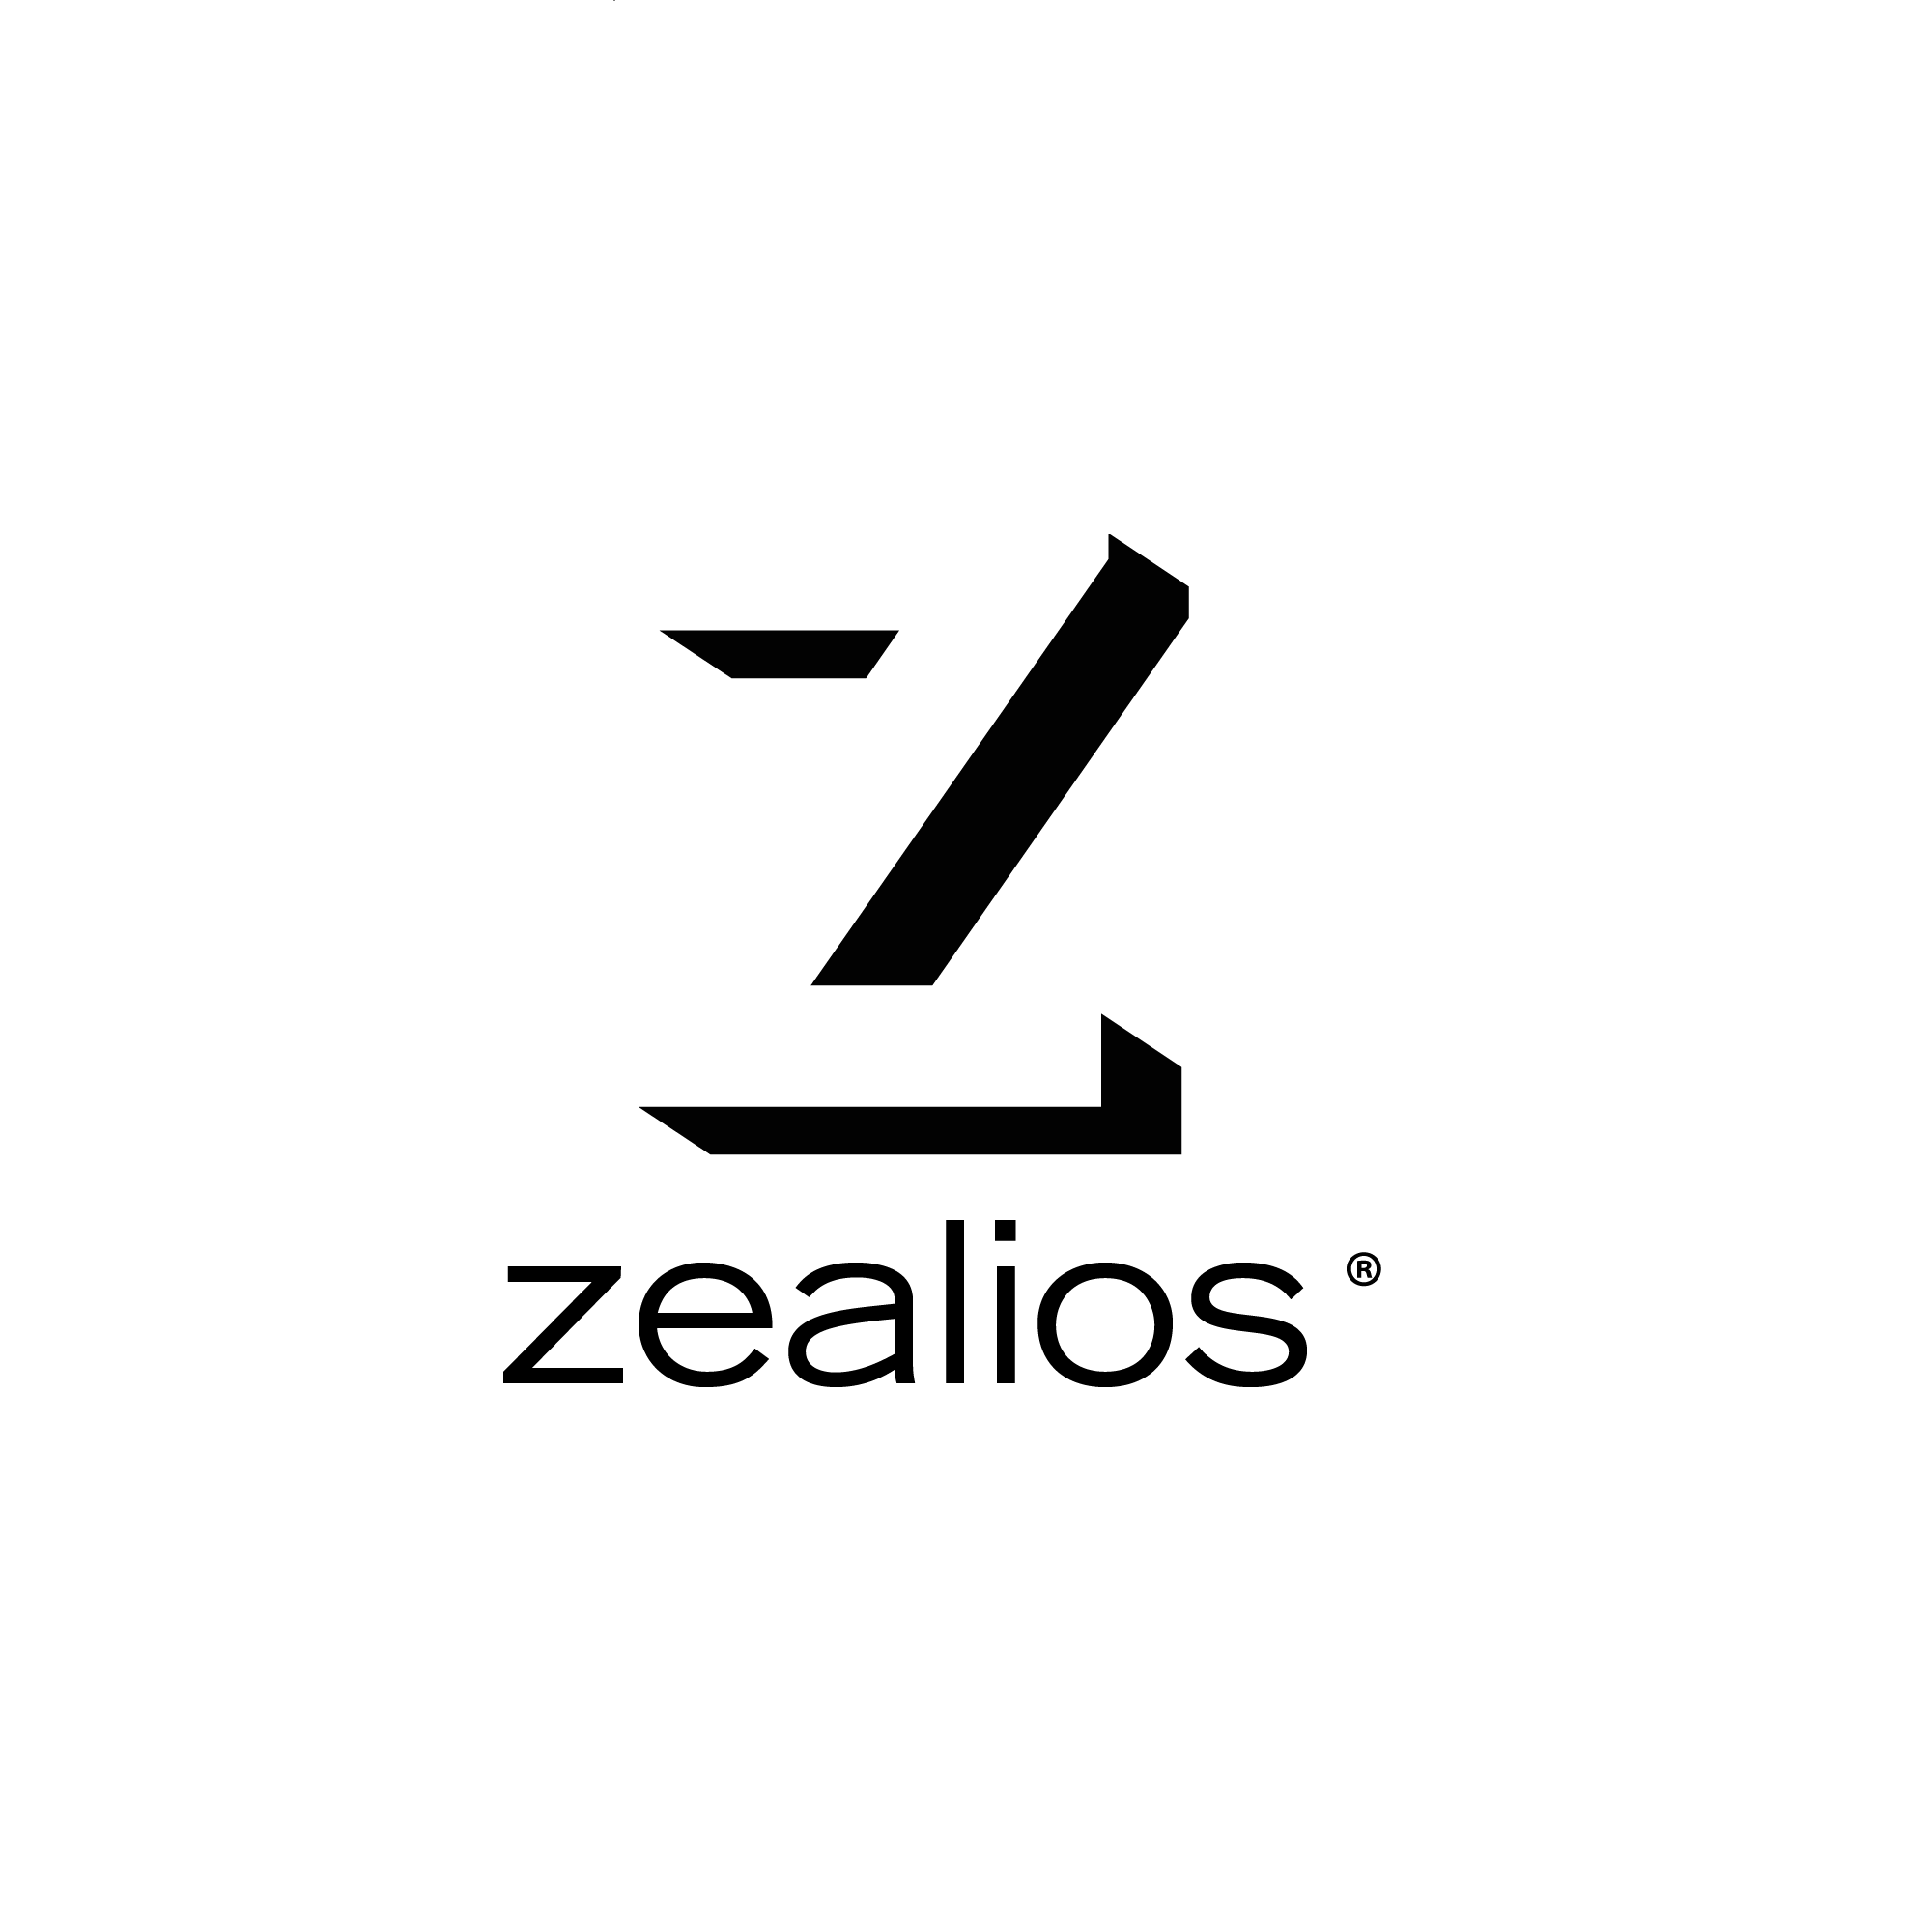 Zealios-logo-sq